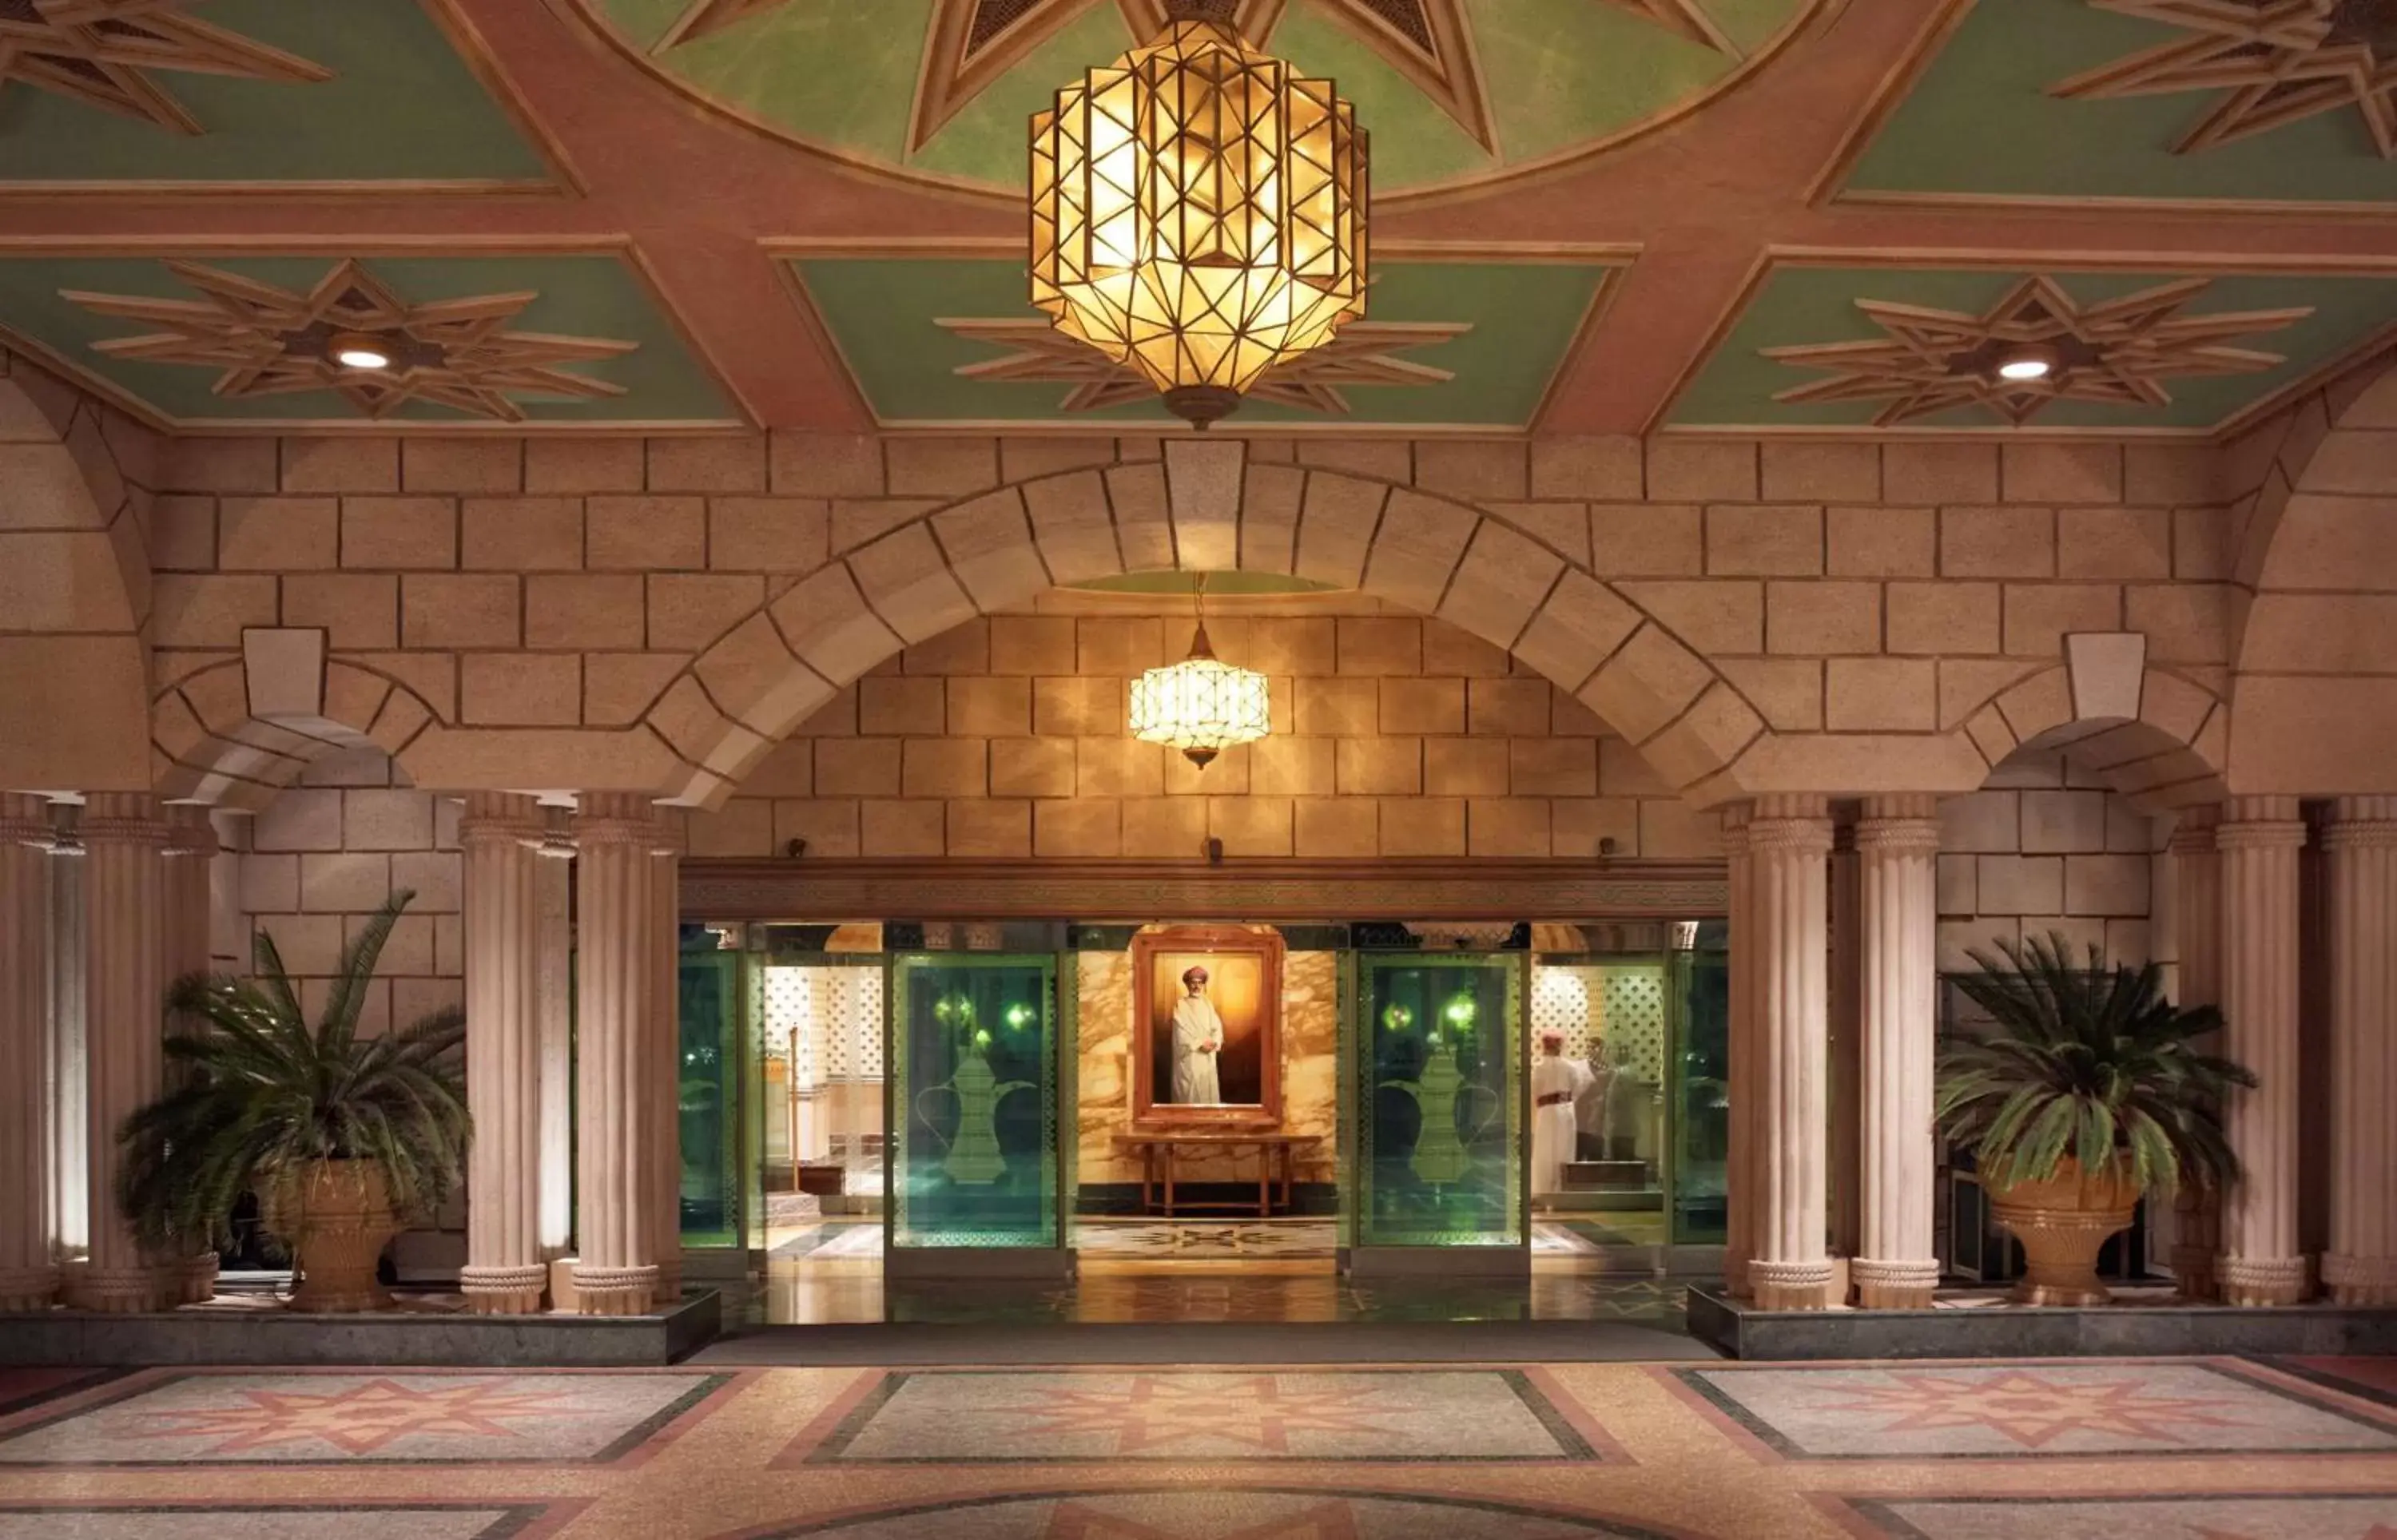 Lobby or reception in Grand Hyatt Muscat